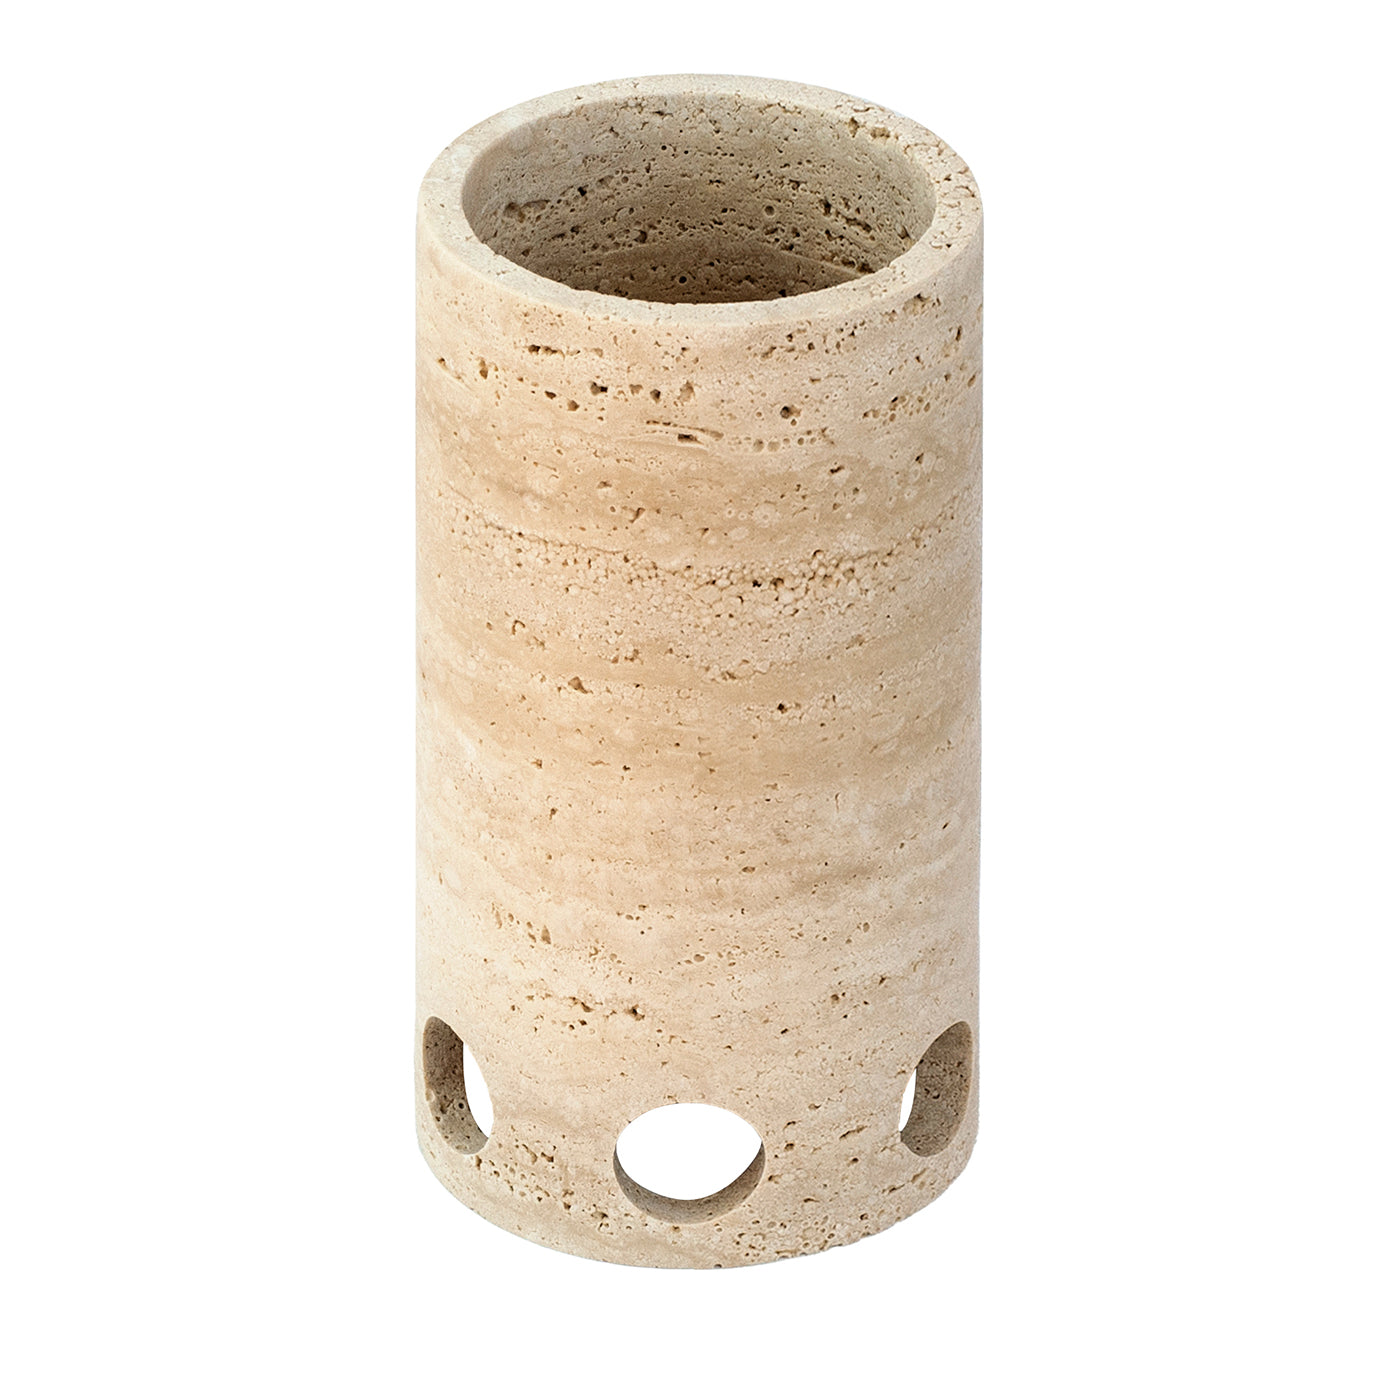 Kolosseum-Vase aus Travertino-Marmor, kurz und satiniert - Hauptansicht